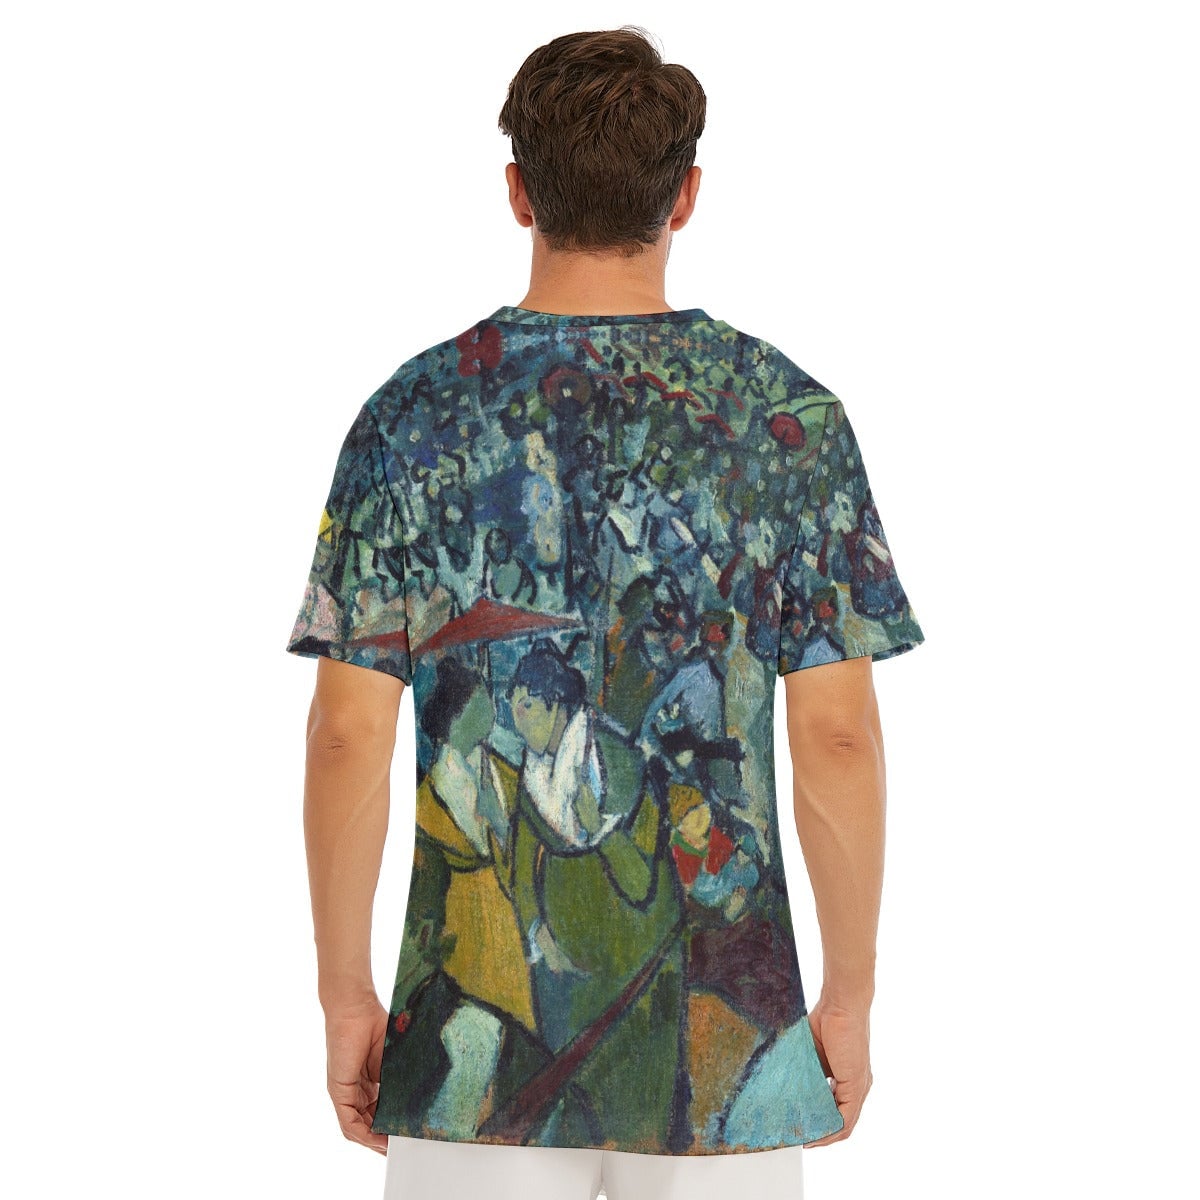 Vincent van Gogh’s Les Arenes T-Shirt